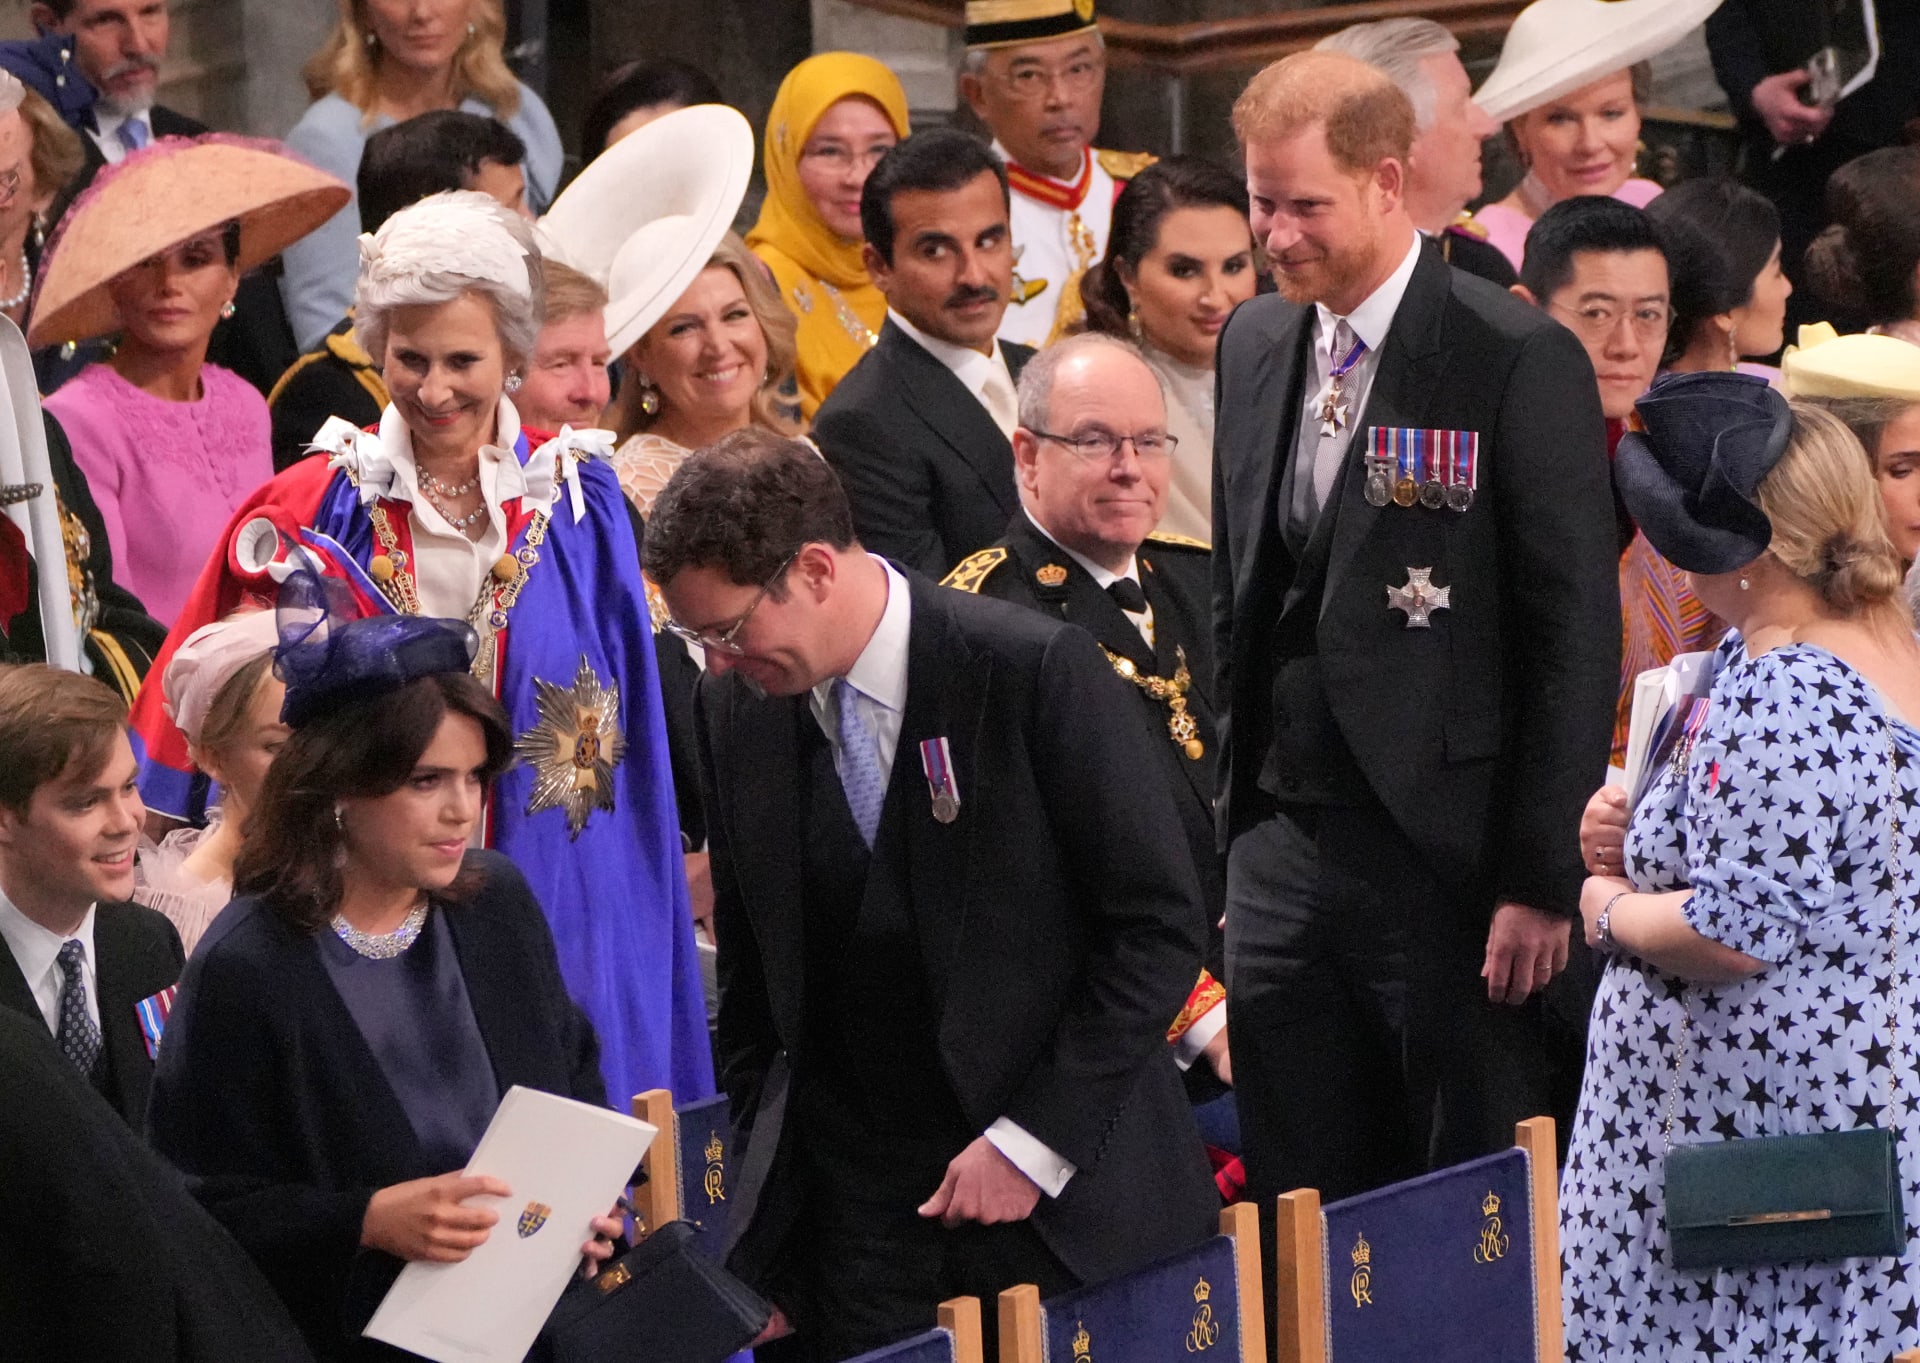 الأمير هاري خلال حفل التتويج مع اينتي عمومته وبعض الحضور